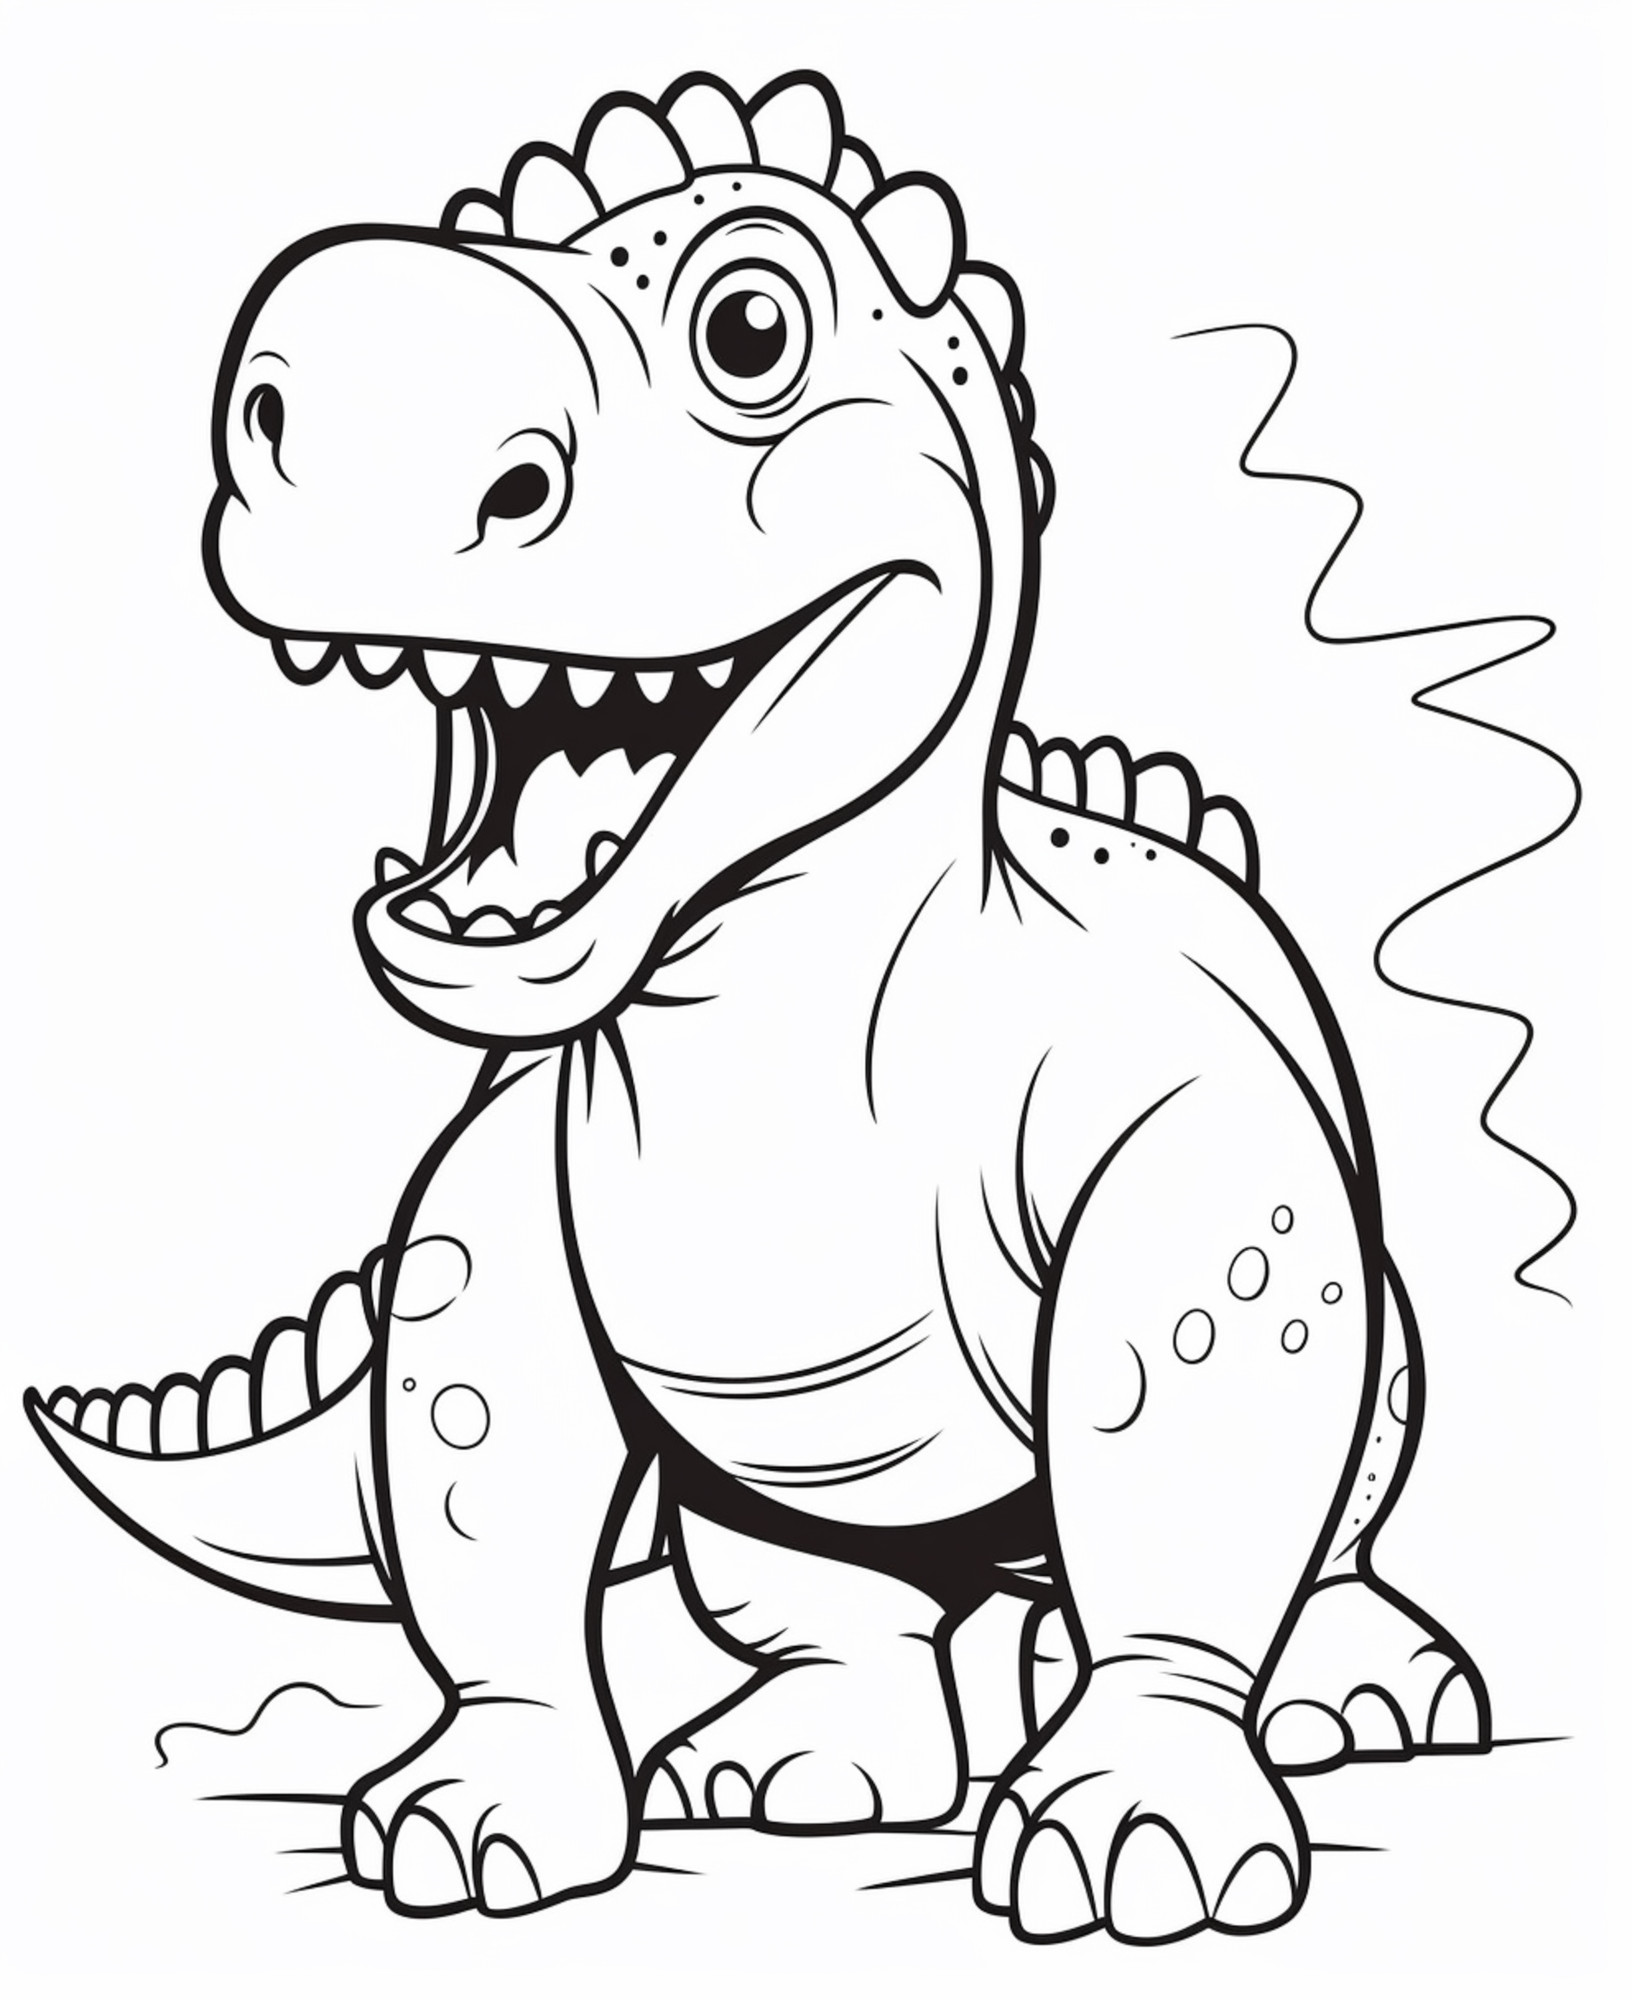 Раскраска для детей: динозавр крупным планом